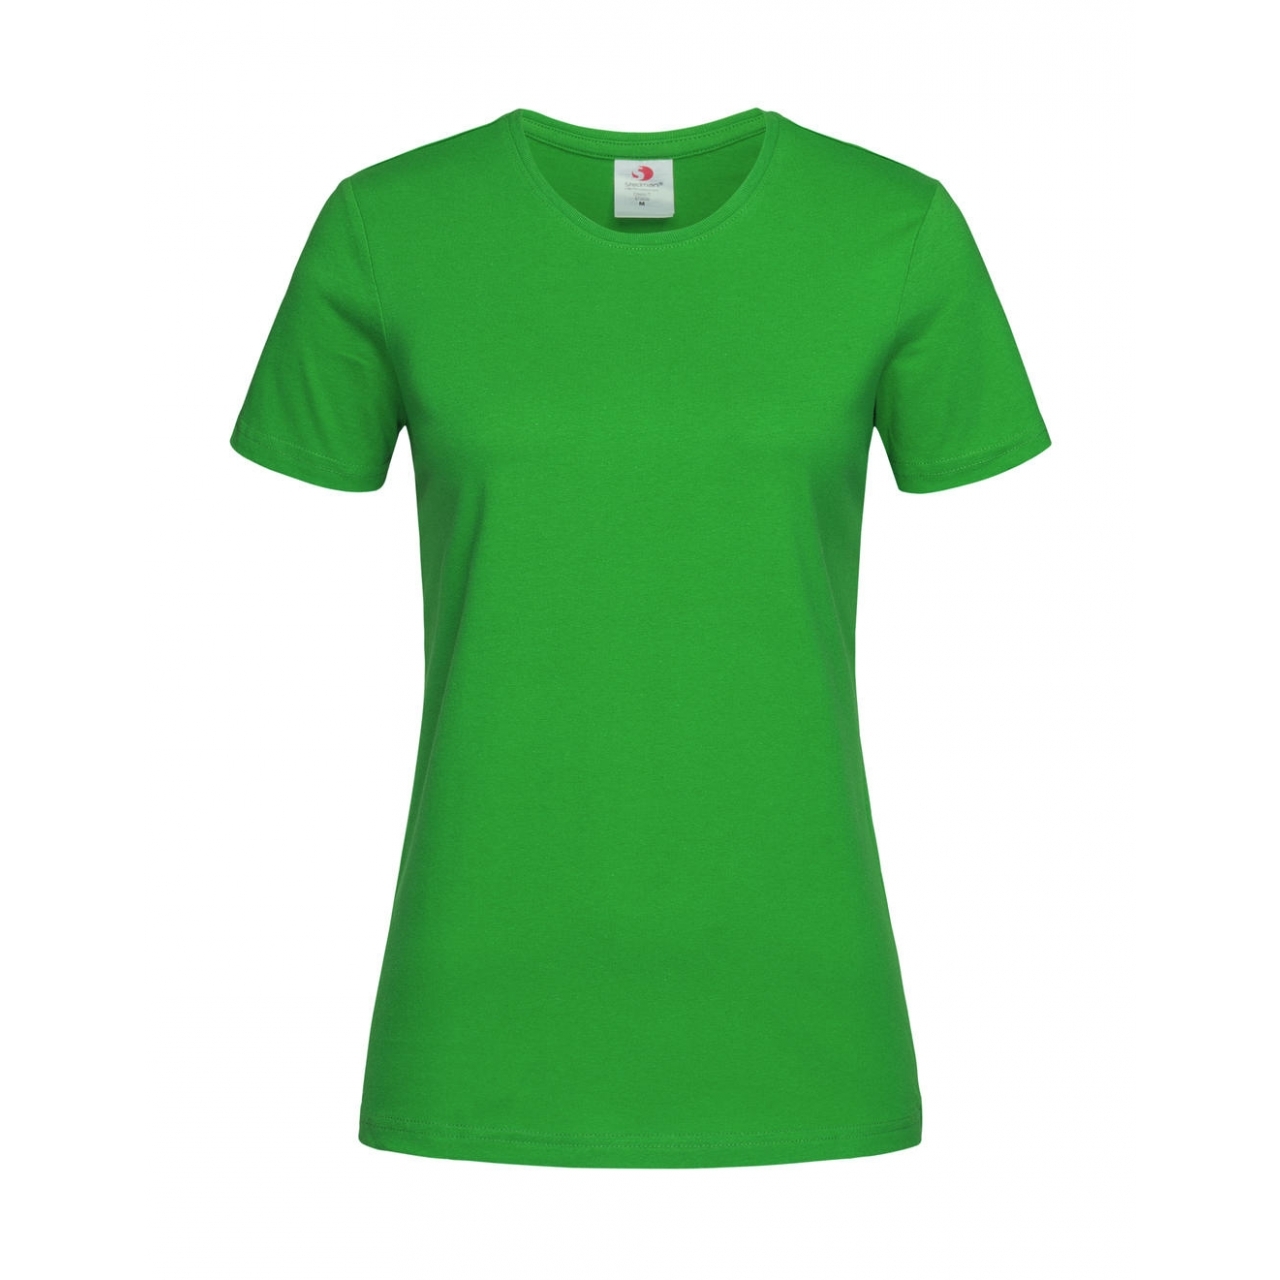 Tričko dámské Stedman Fitted s kulatým výstřihem - zelené, L